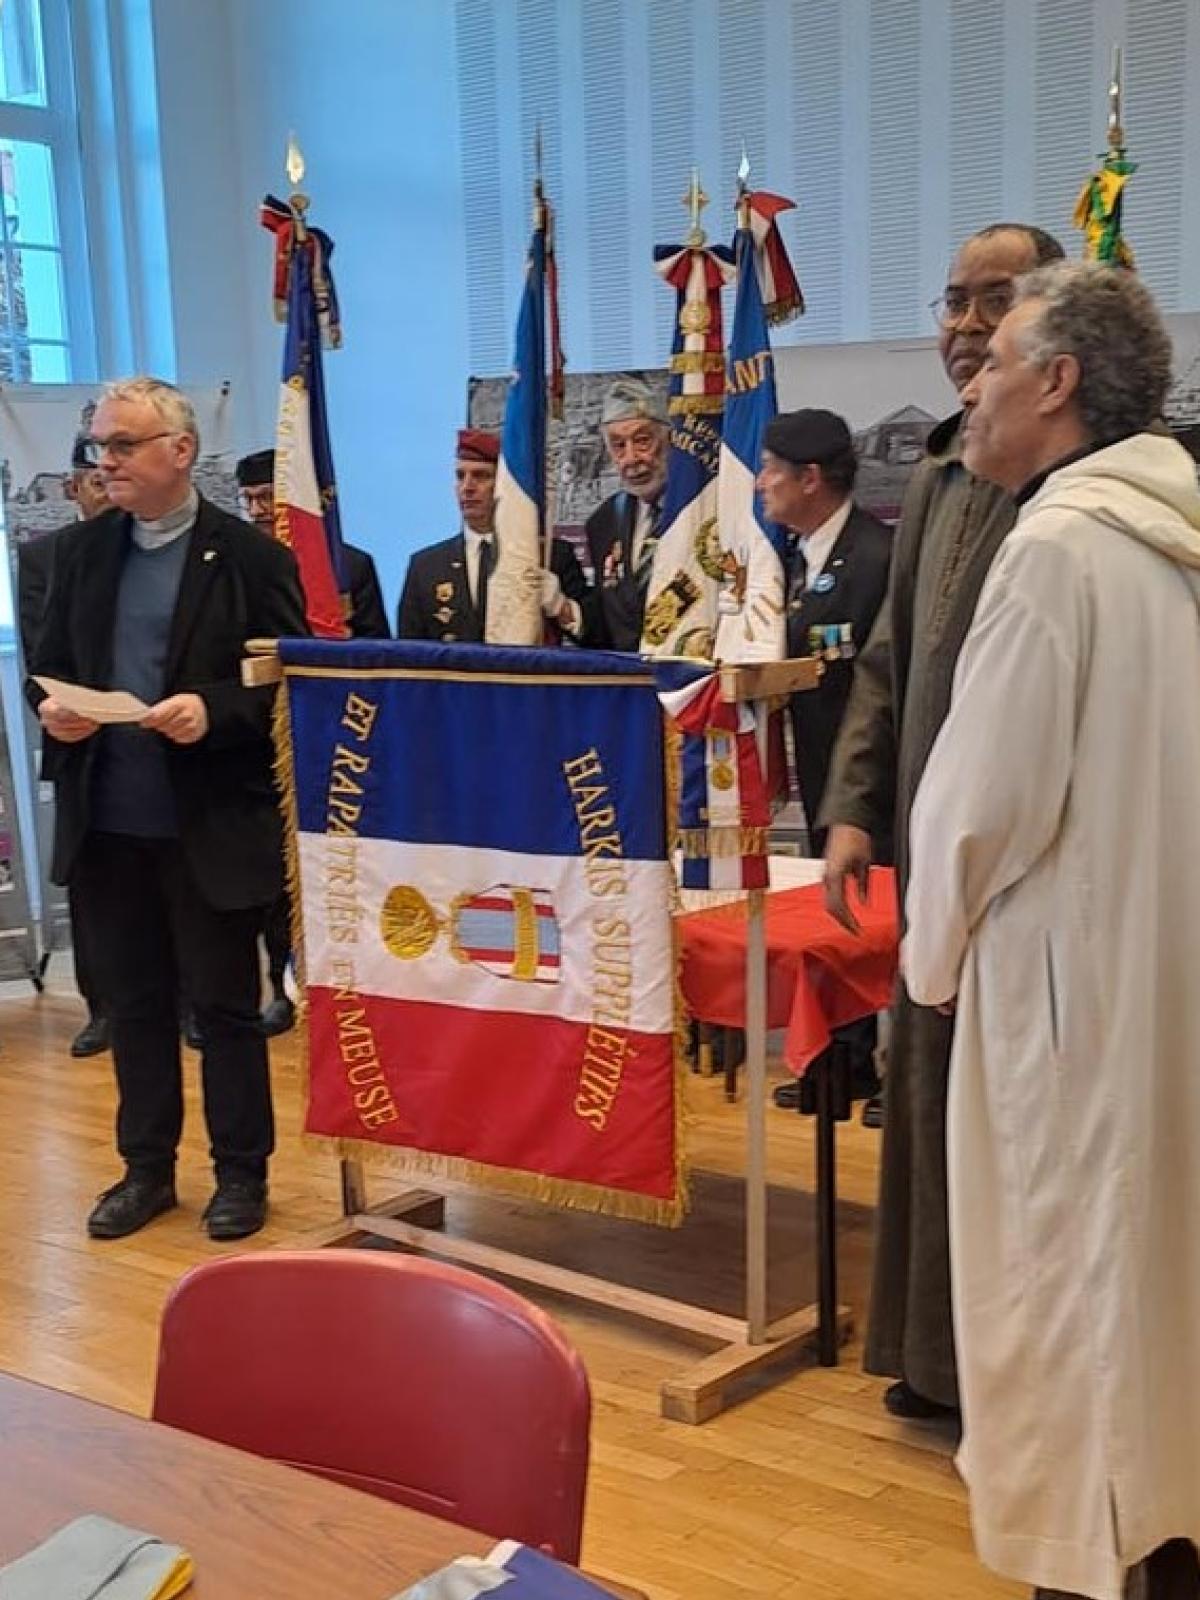 Le nouveau drapeau entouré de l'abbé et des imams @ Carole REMY / L'Est Républicain / AHSRM